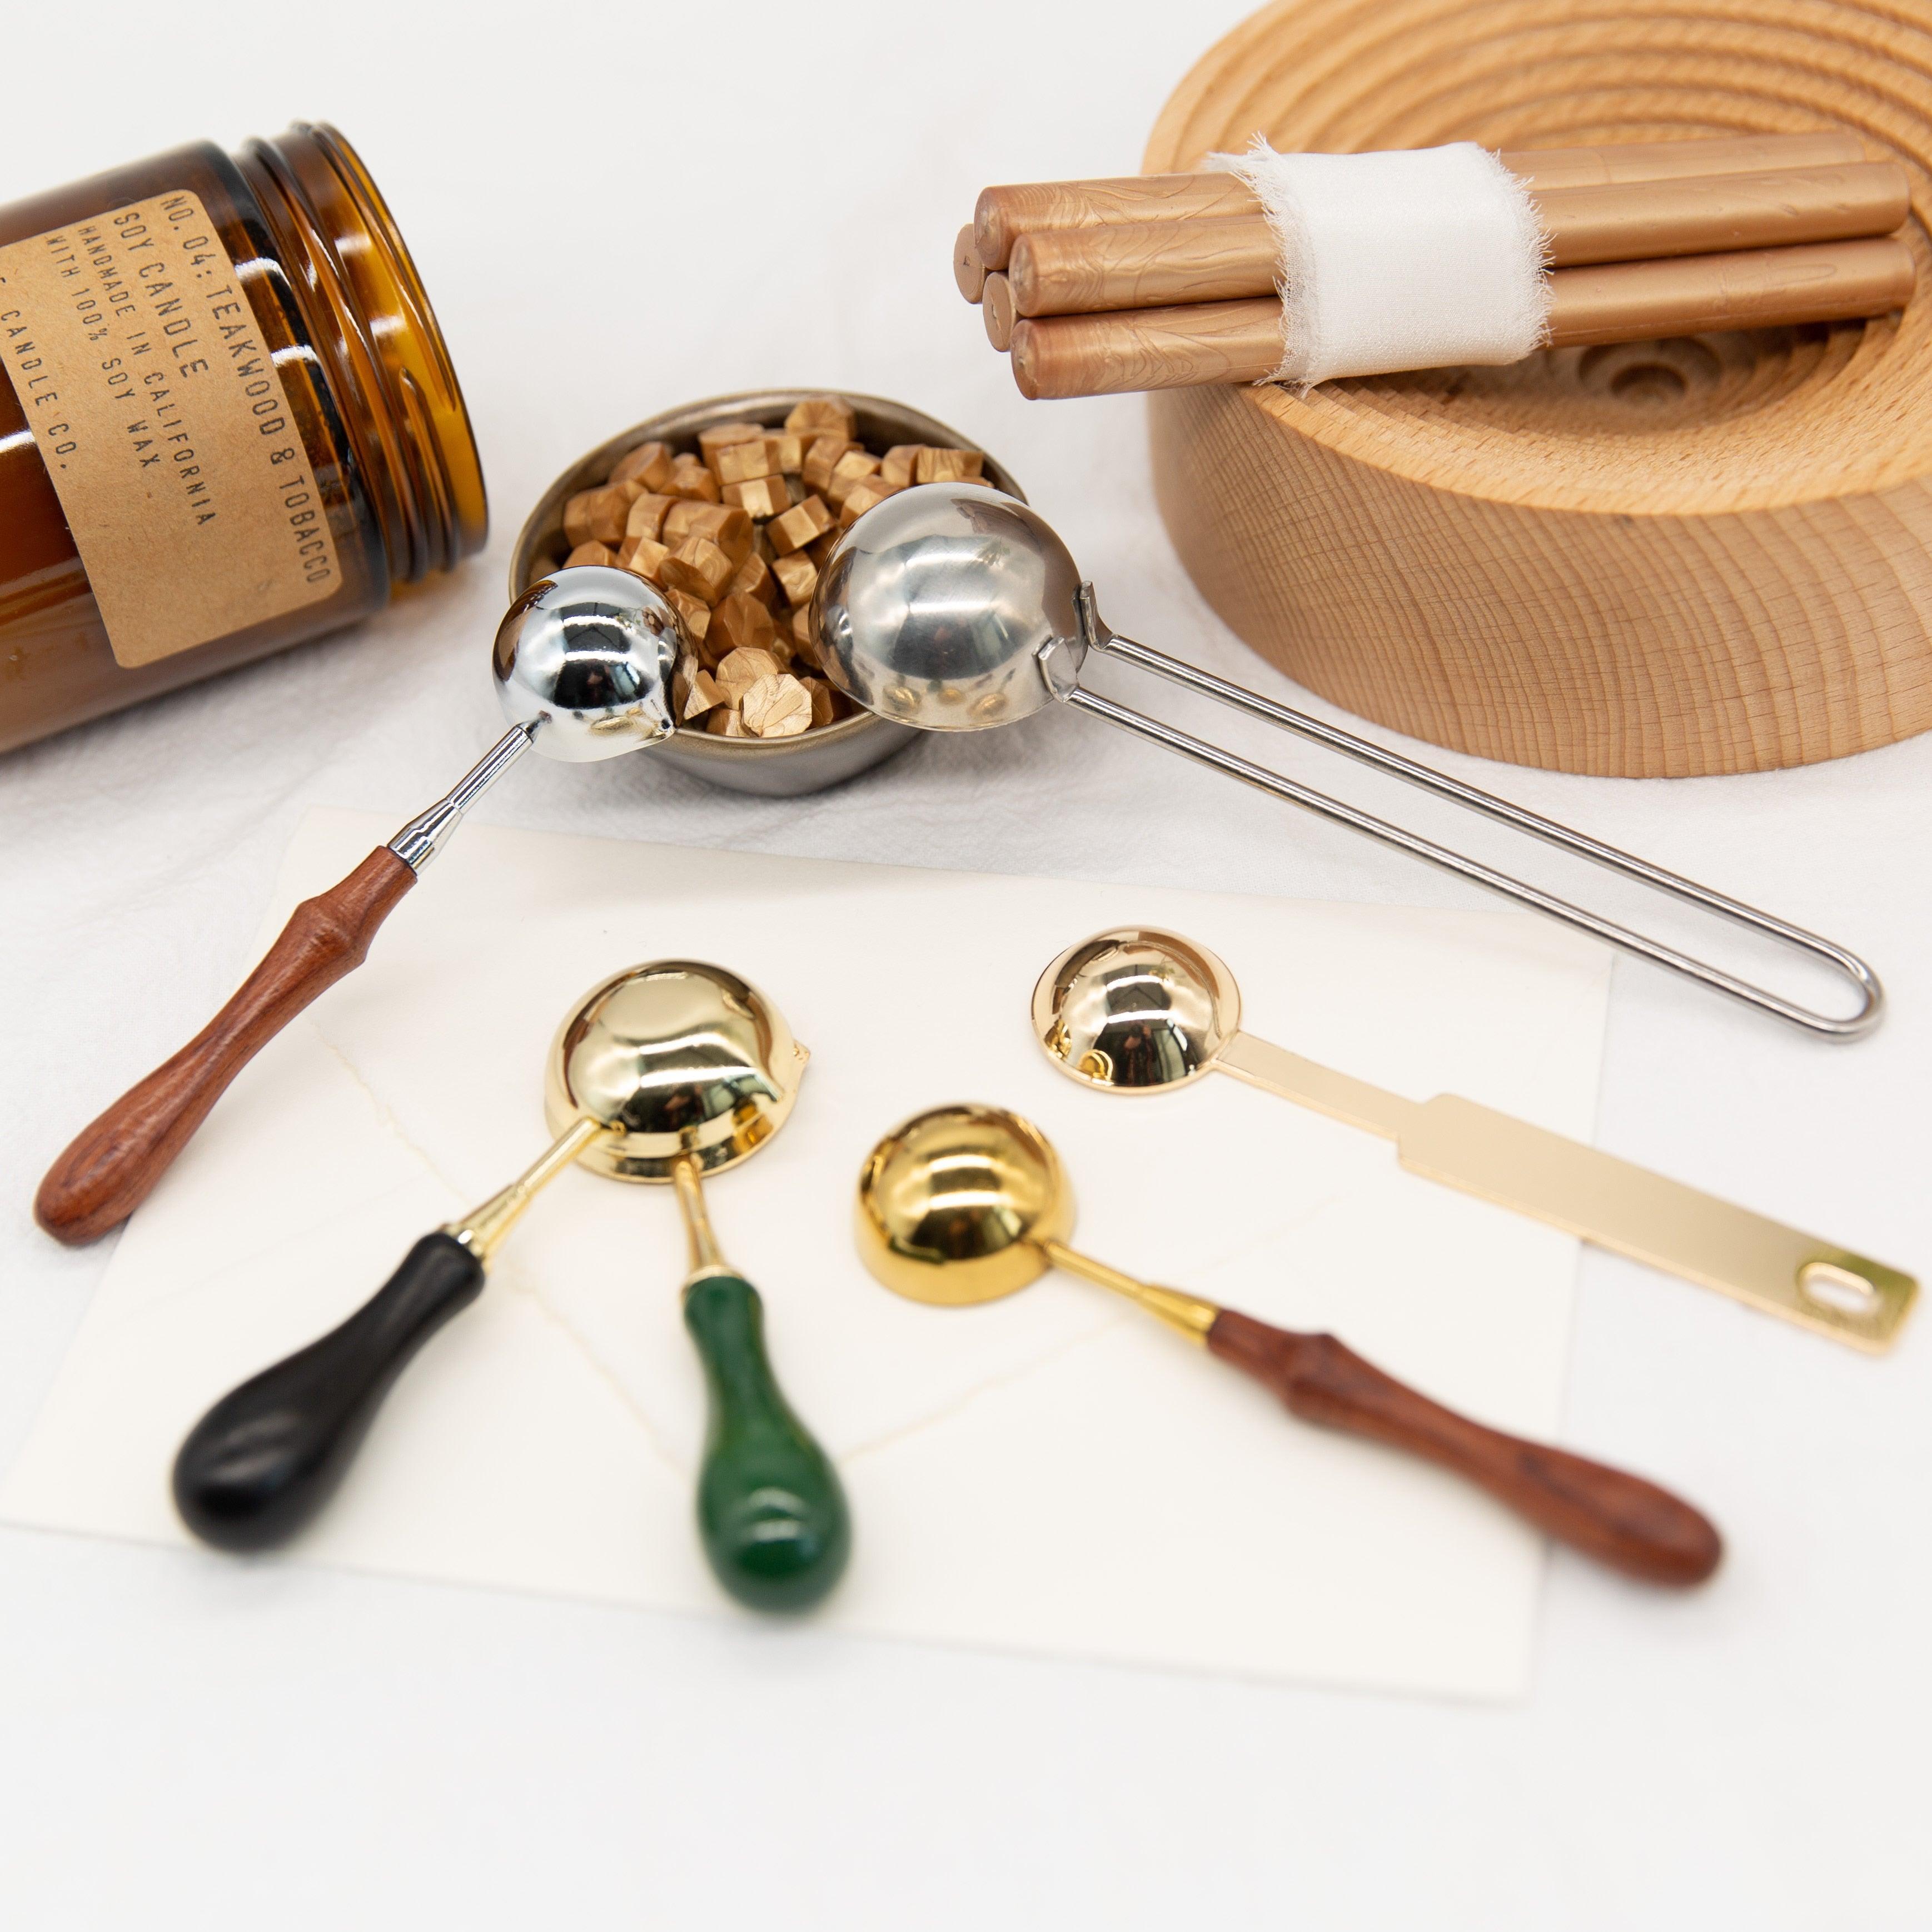 Wooden Wax Seal Spoon, Handmade Sealing Wax Spoon, Wax Melt Spoon, Wax  Sealing Stamp, Wax Stamps, Wax Seal Supplies 